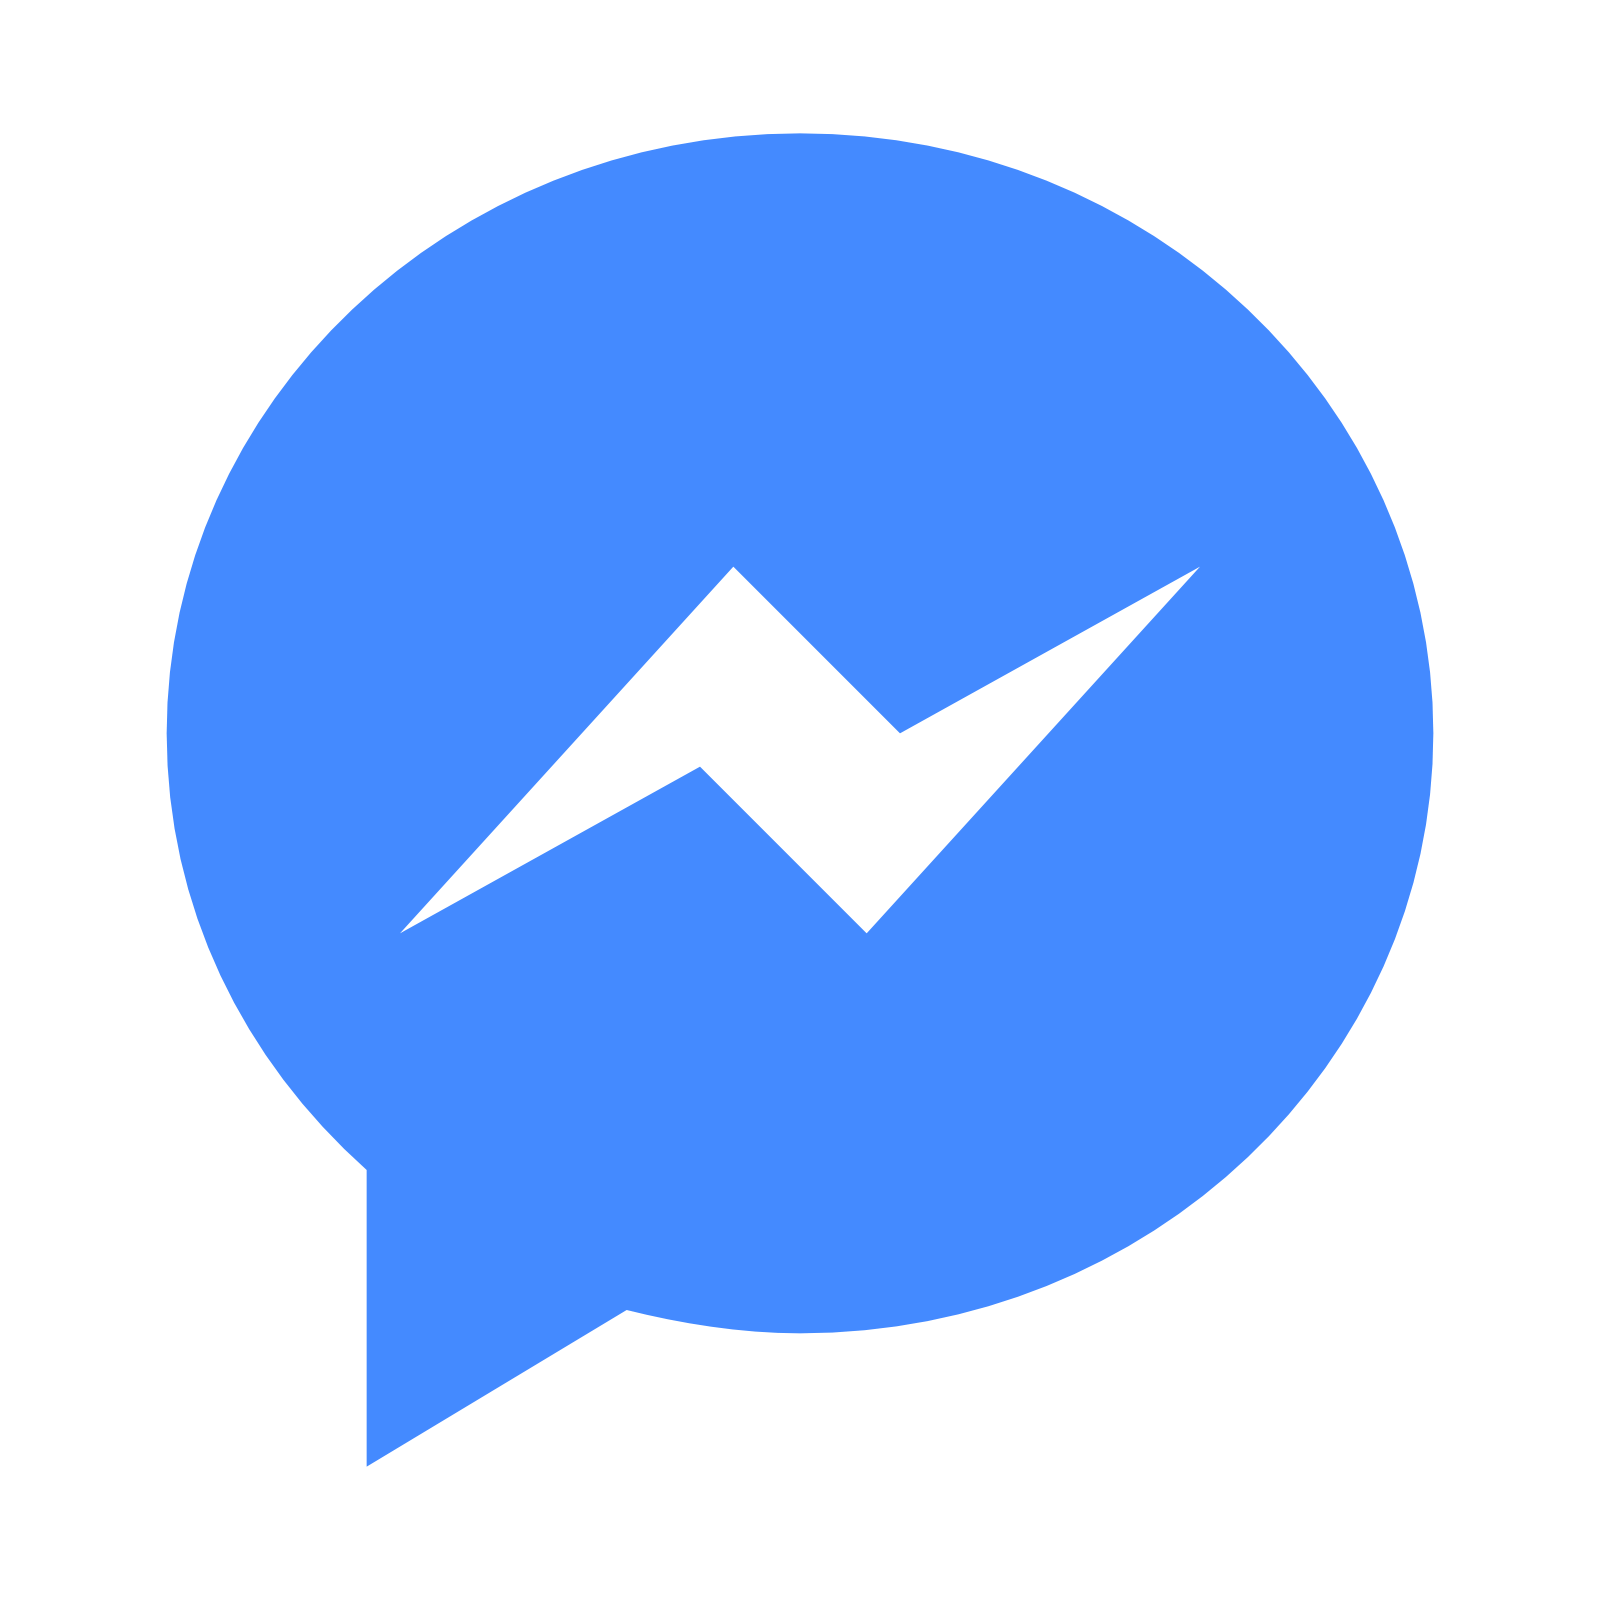 Messenger App Logo - Free Facebook Messenger App Icon 337084. Download Facebook